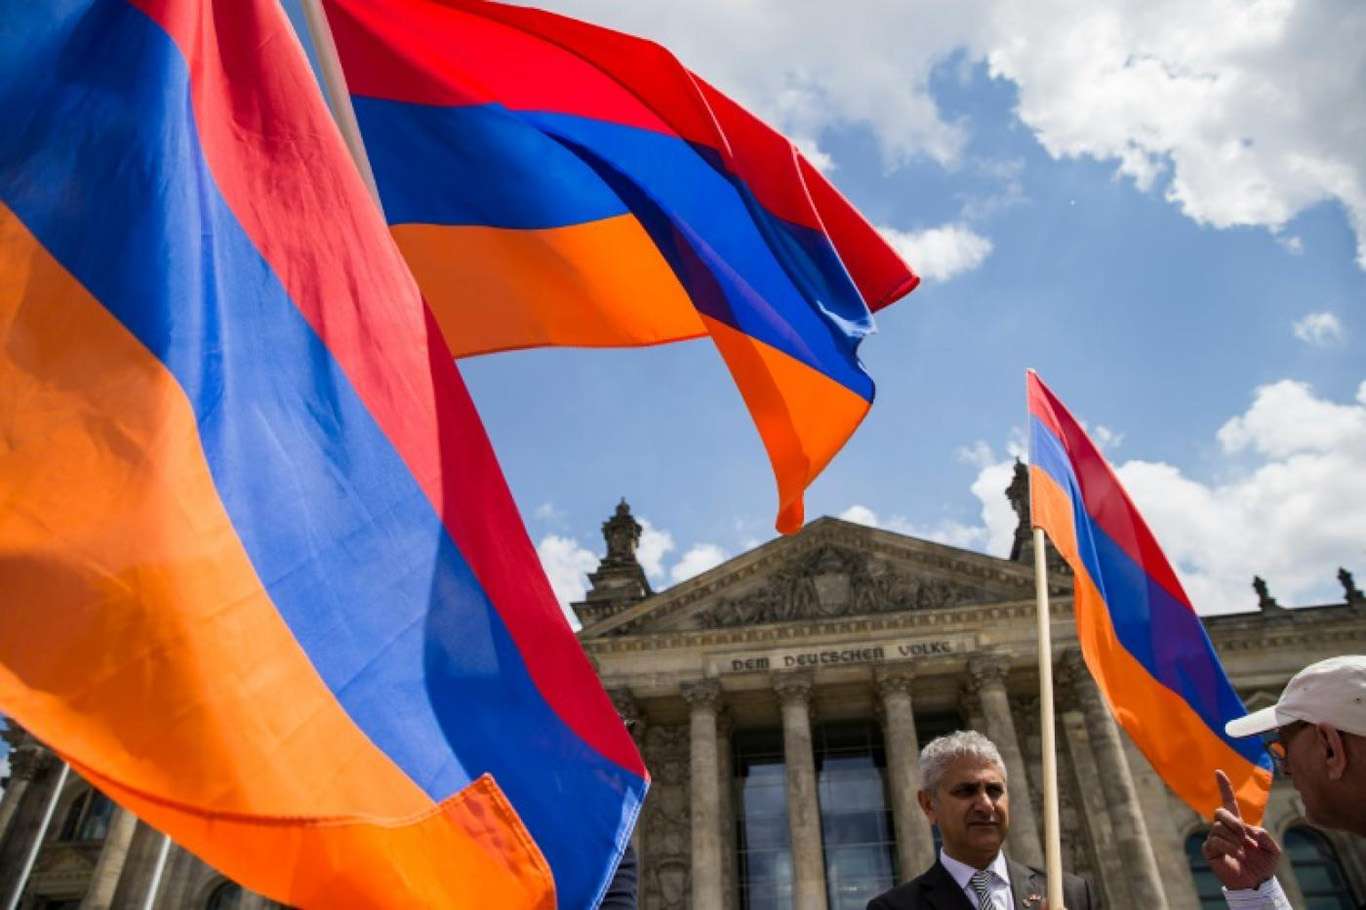 Ermenistan'da halk sandık başında